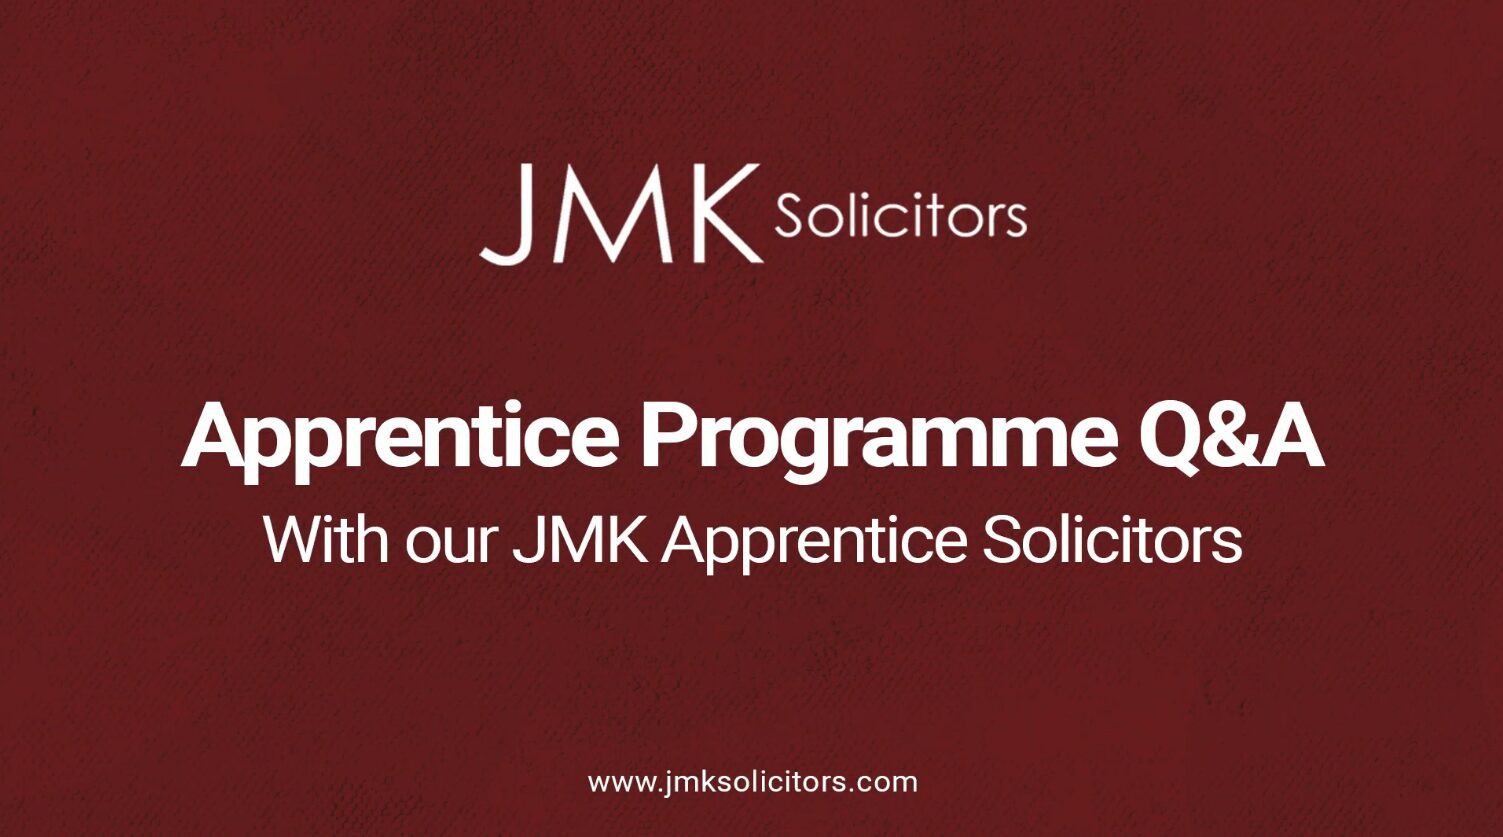 JMK Solicitors Apprentice Programme Q&A